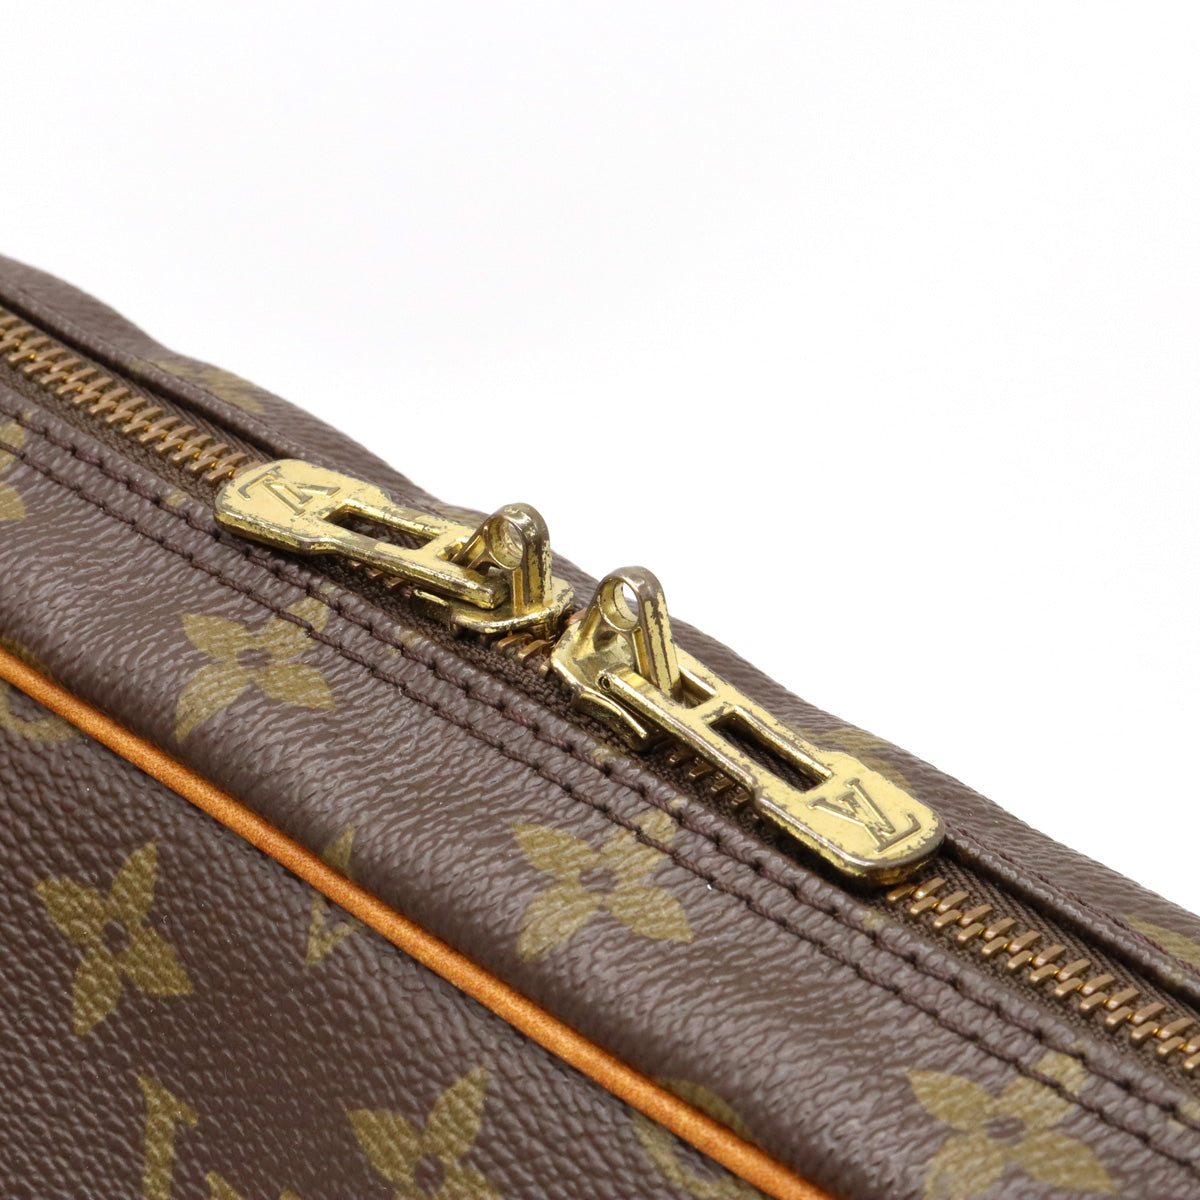 Louis Vuitton Porte Documents Voyage Business Bag(Brown)